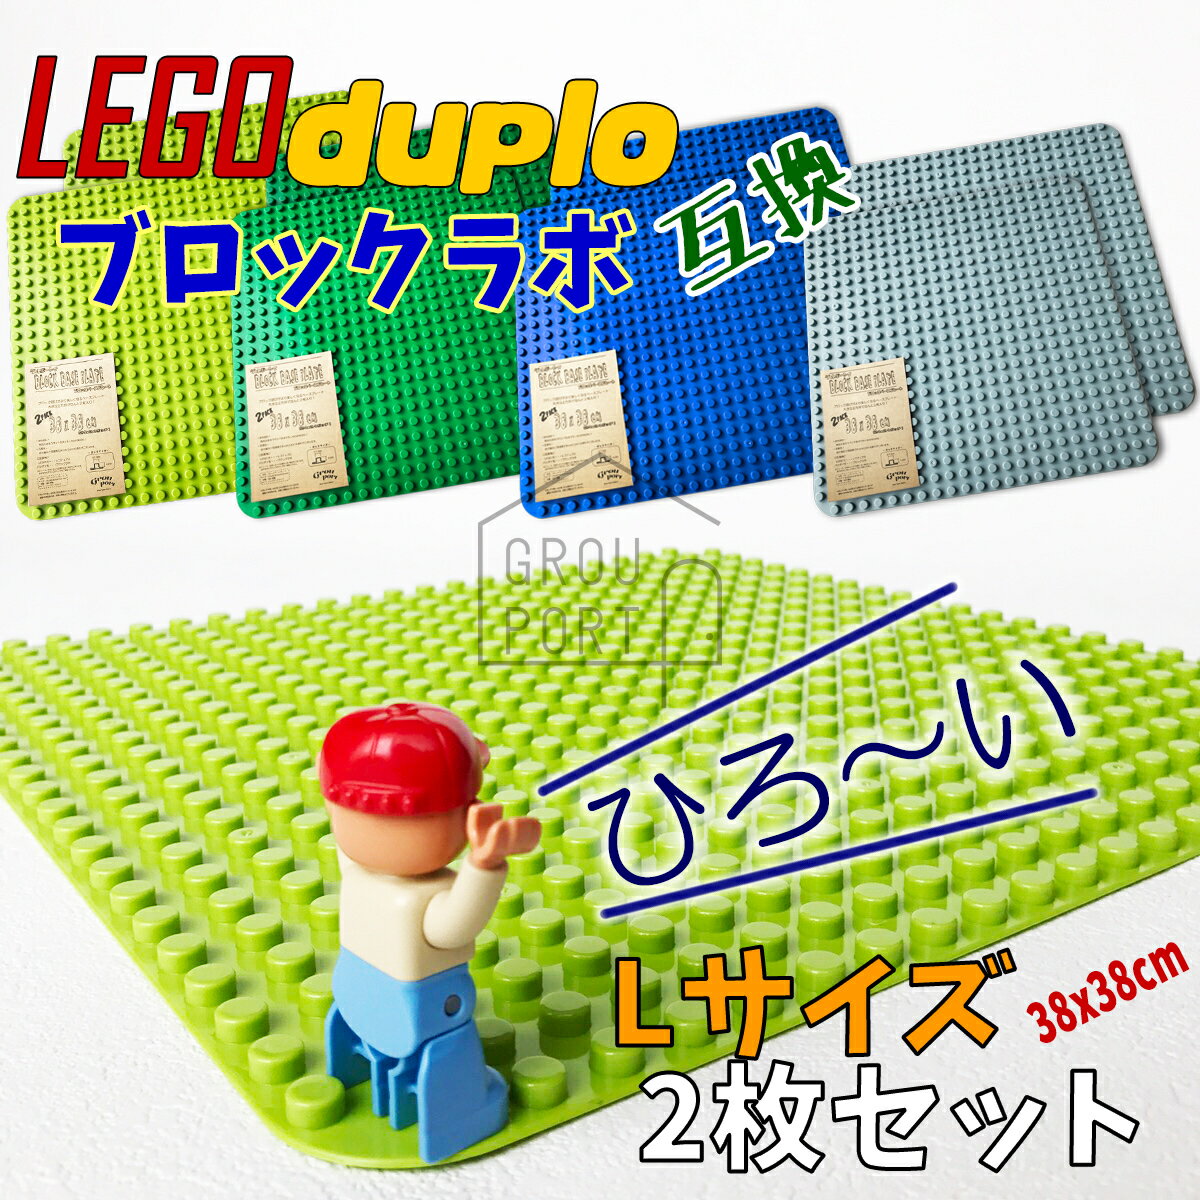 【あす楽】 LEGO レゴ デュプロ 基礎板 互換 duplo レゴデュプロ ブロックラボ 大きい ブロック ベースプレートBlock Labo 全4色 Lサイズ 2枚セット同規格 互換品 ベース プレート 基本 板 基礎 基礎版 基本版 おもちゃ 緑 黄緑 グレー グリーン ブルー 青 土台